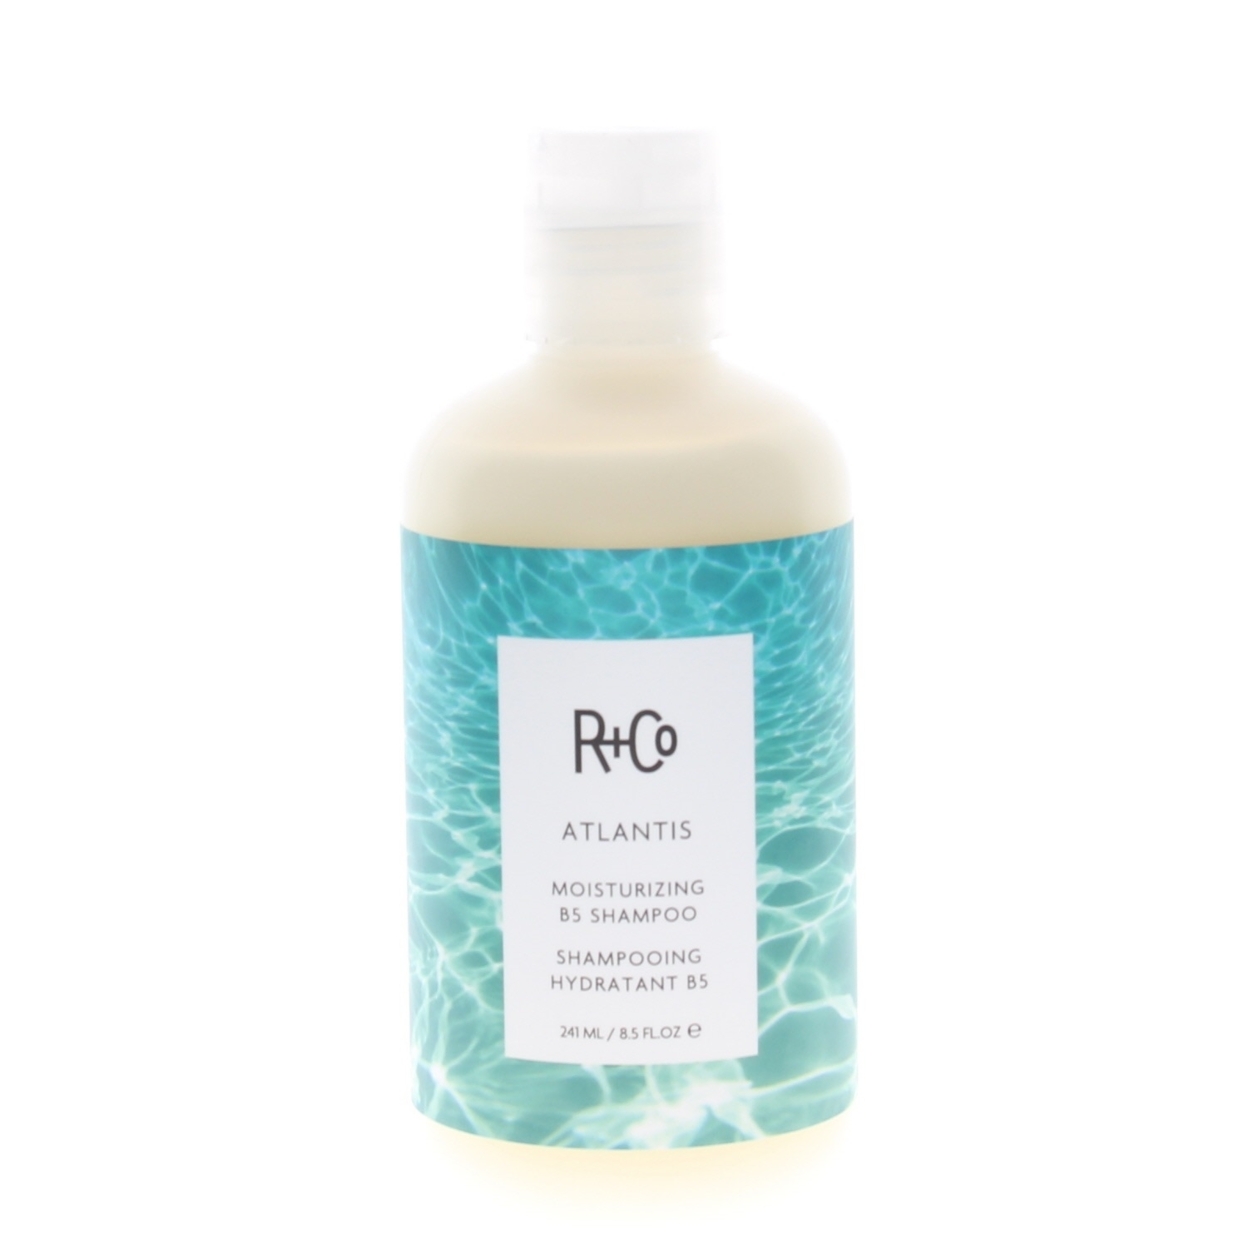 R+Co Atlantis Moisturizing B5 Shampoo 8.5oz/241ml